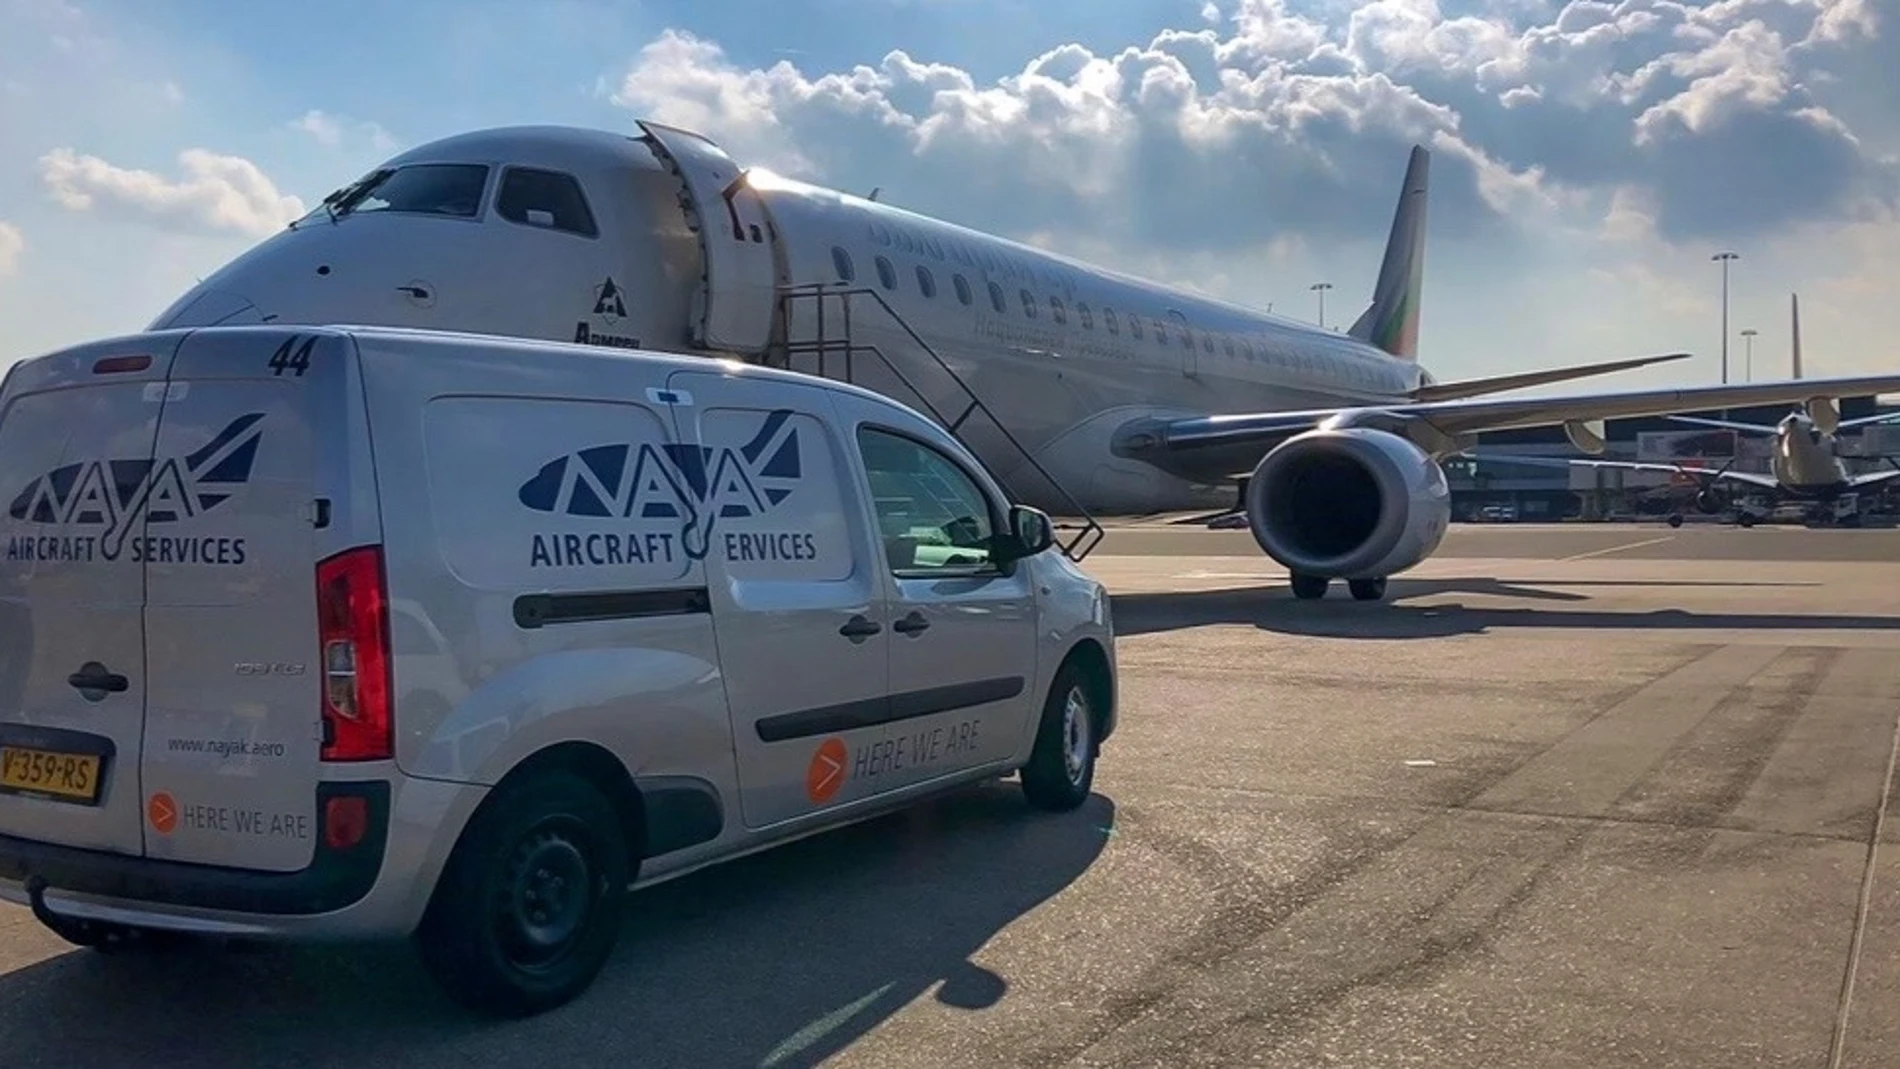 Nayak ofertas empleo para el mantenimiento aviones en España y Europa